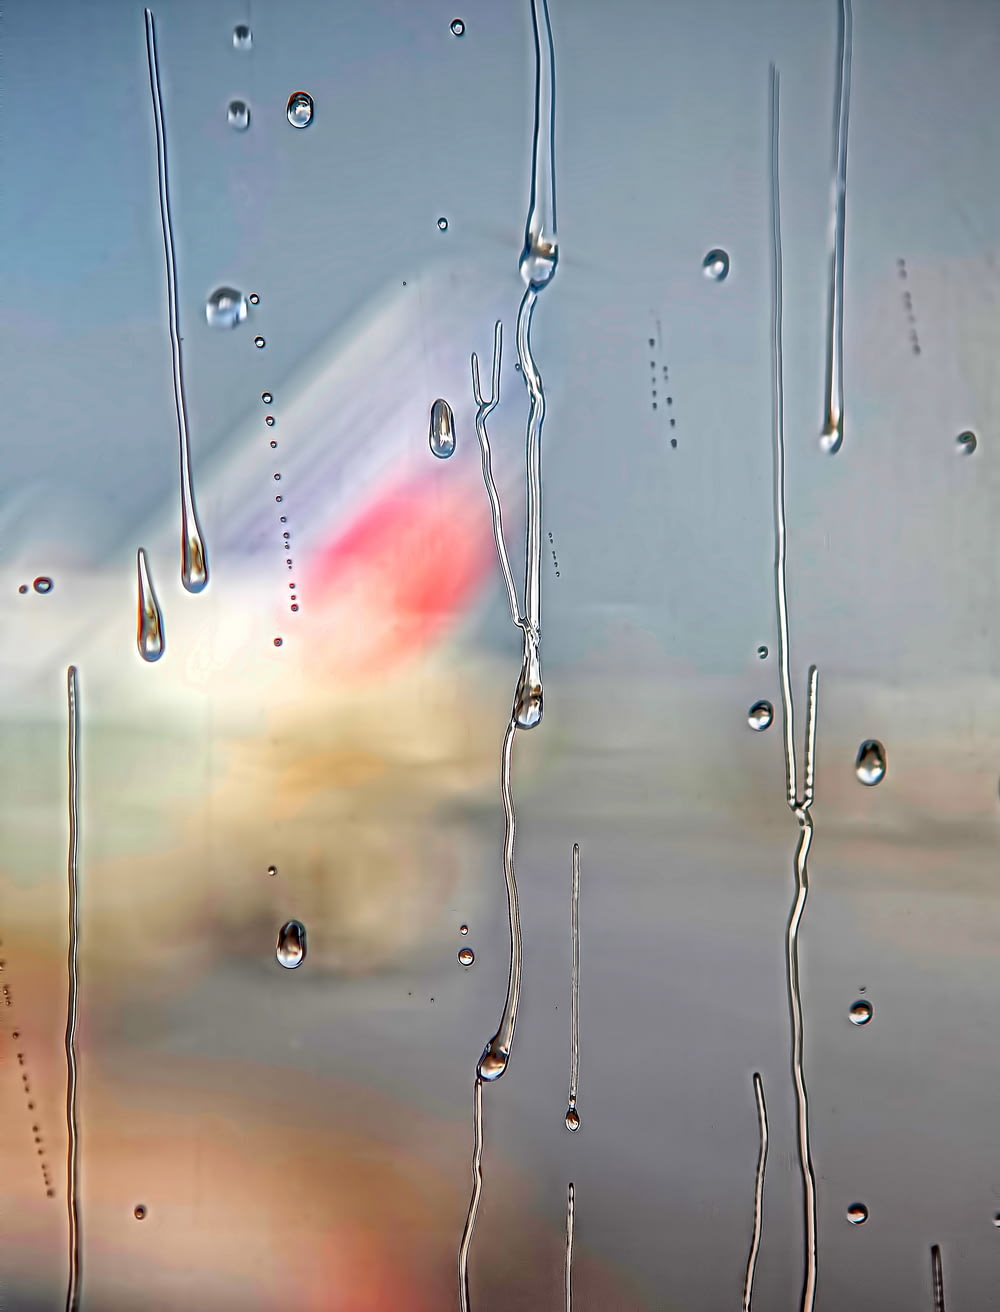 Mise au point de la photographie de gouttelettes d’eau sur une surface en verre